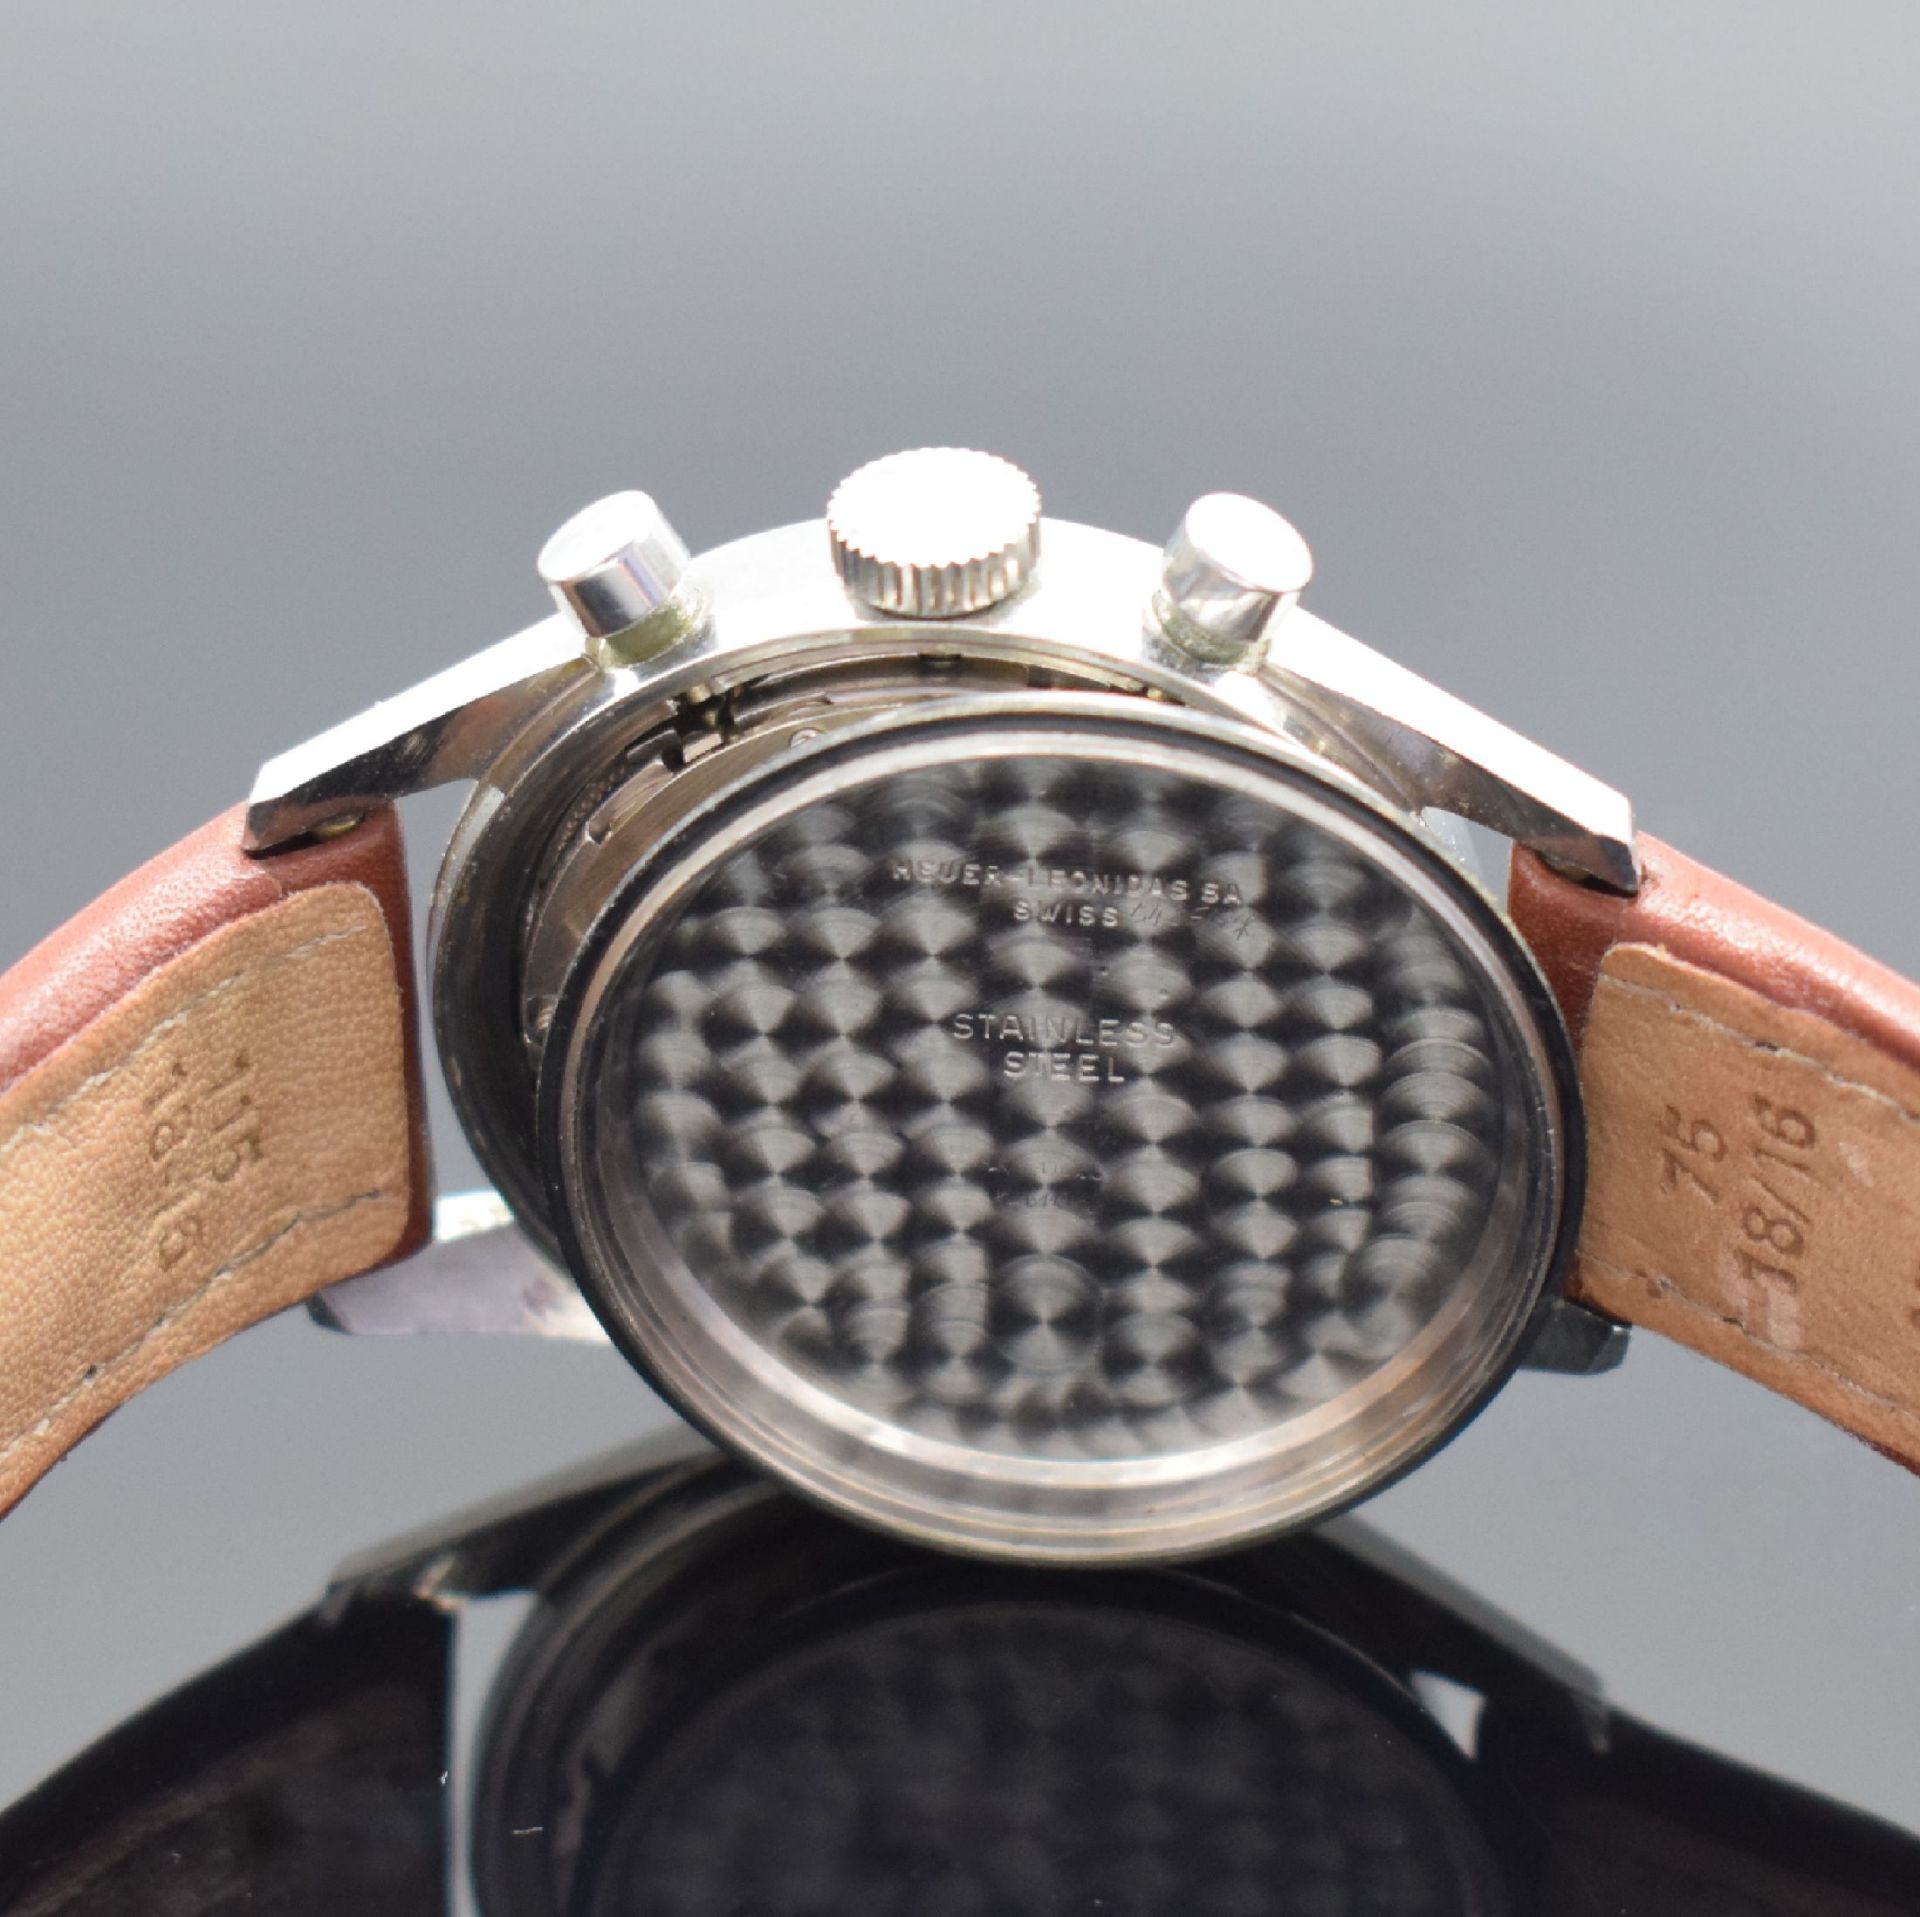 HEUER Carrera seltener, legendäre Schaltradchronograph - Bild 7 aus 7